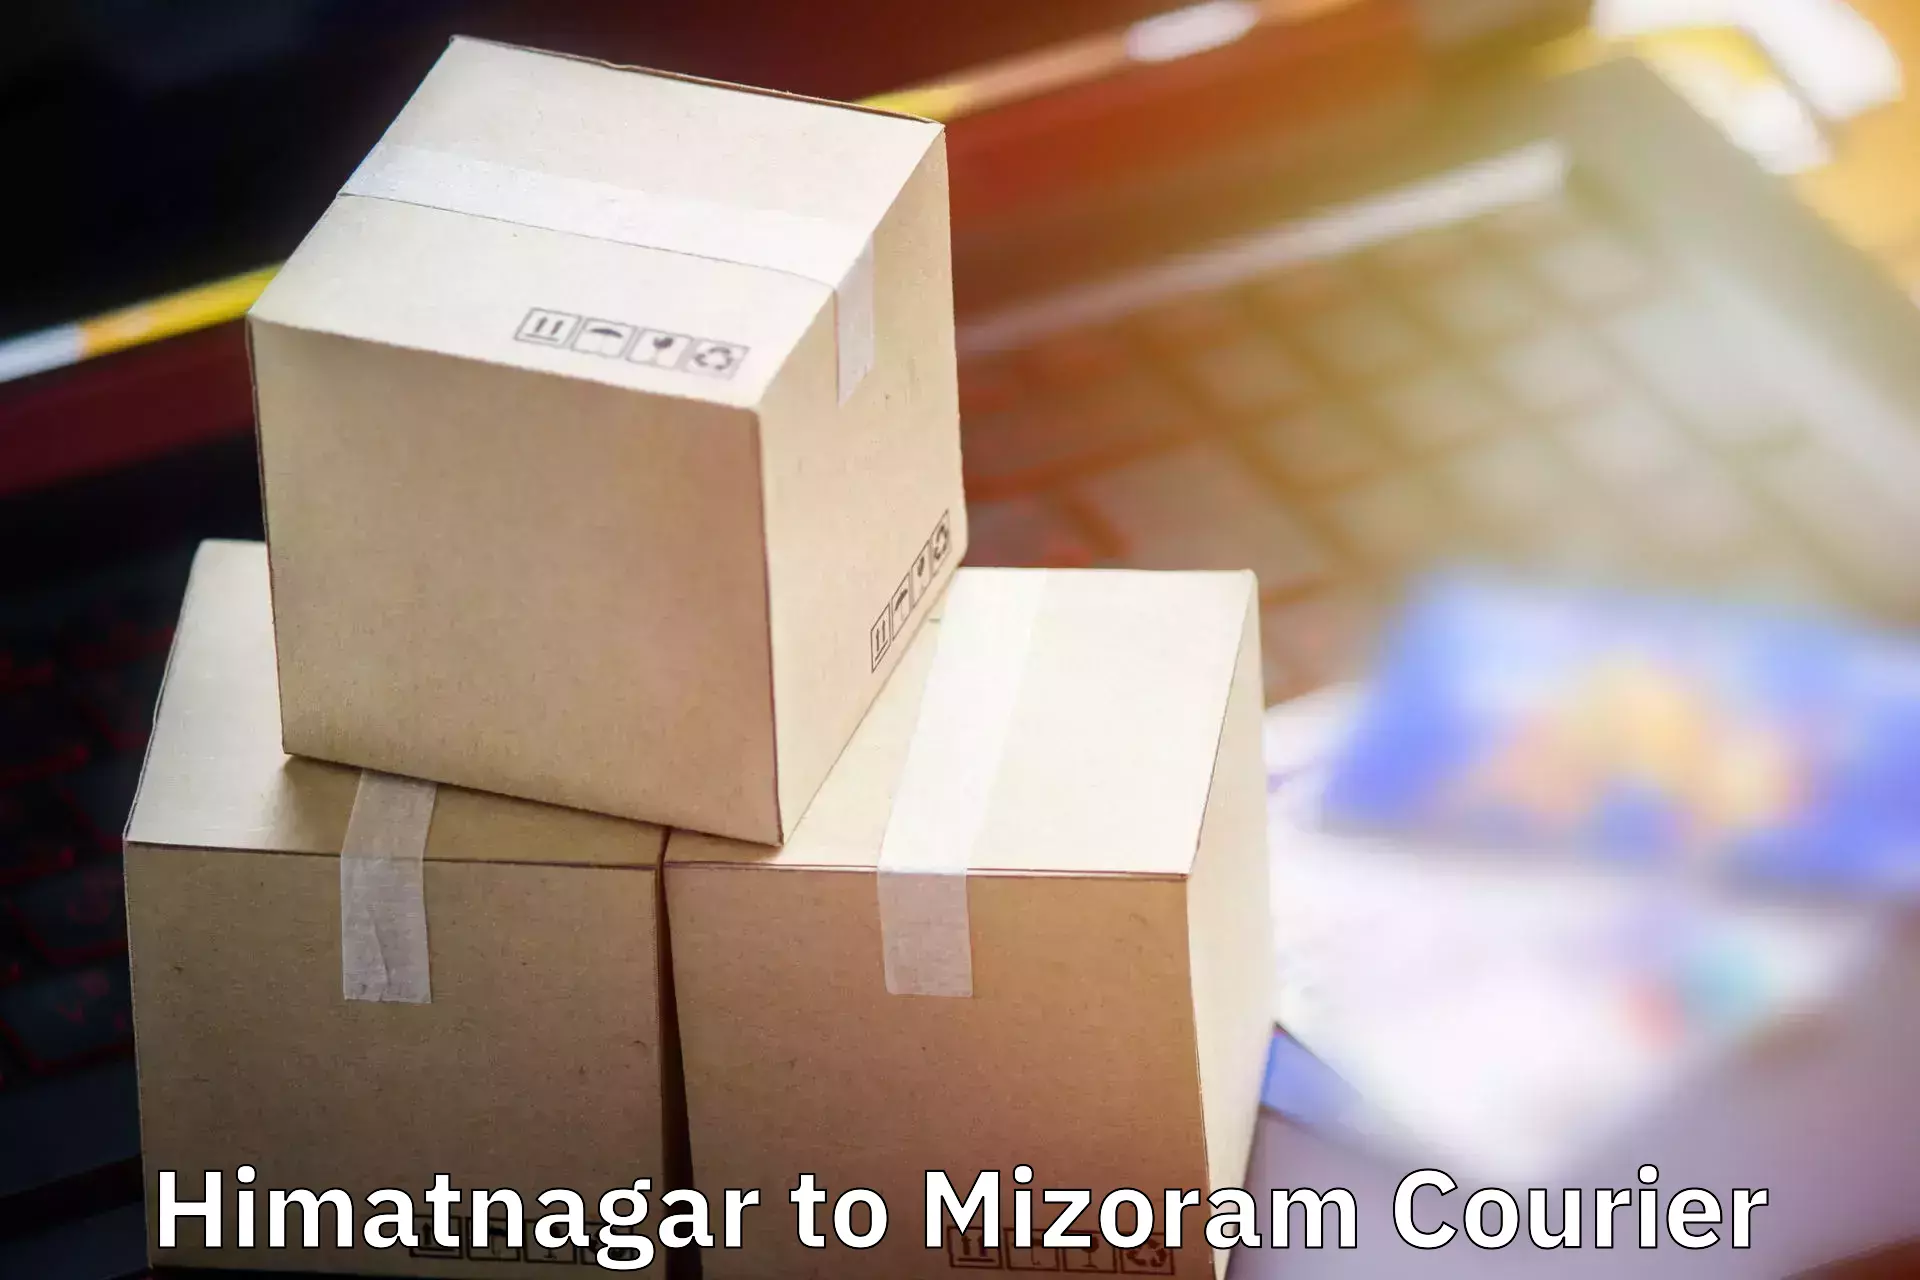 Baggage shipping experience Himatnagar to Aizawl